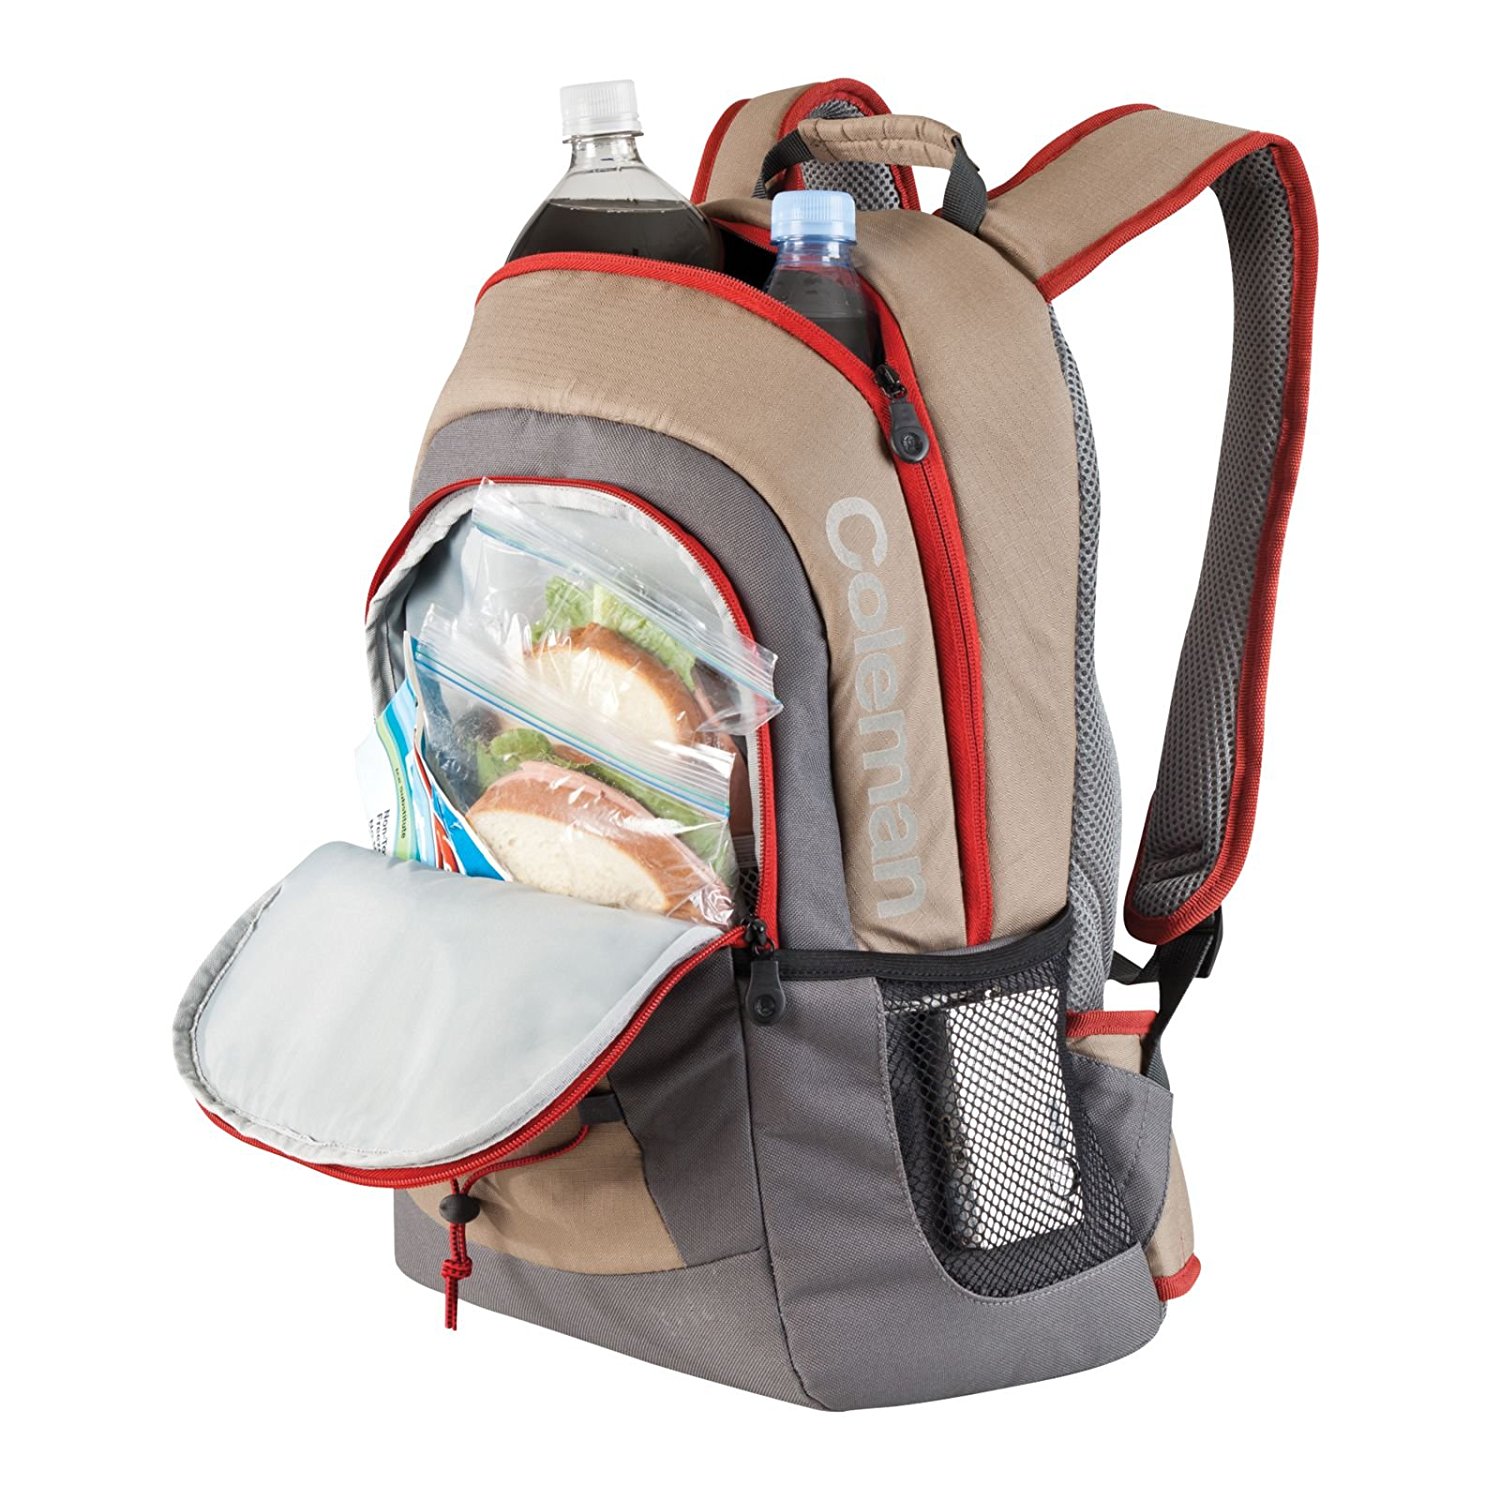 Coleman Soft Backpack Cooler – Just $17.32!